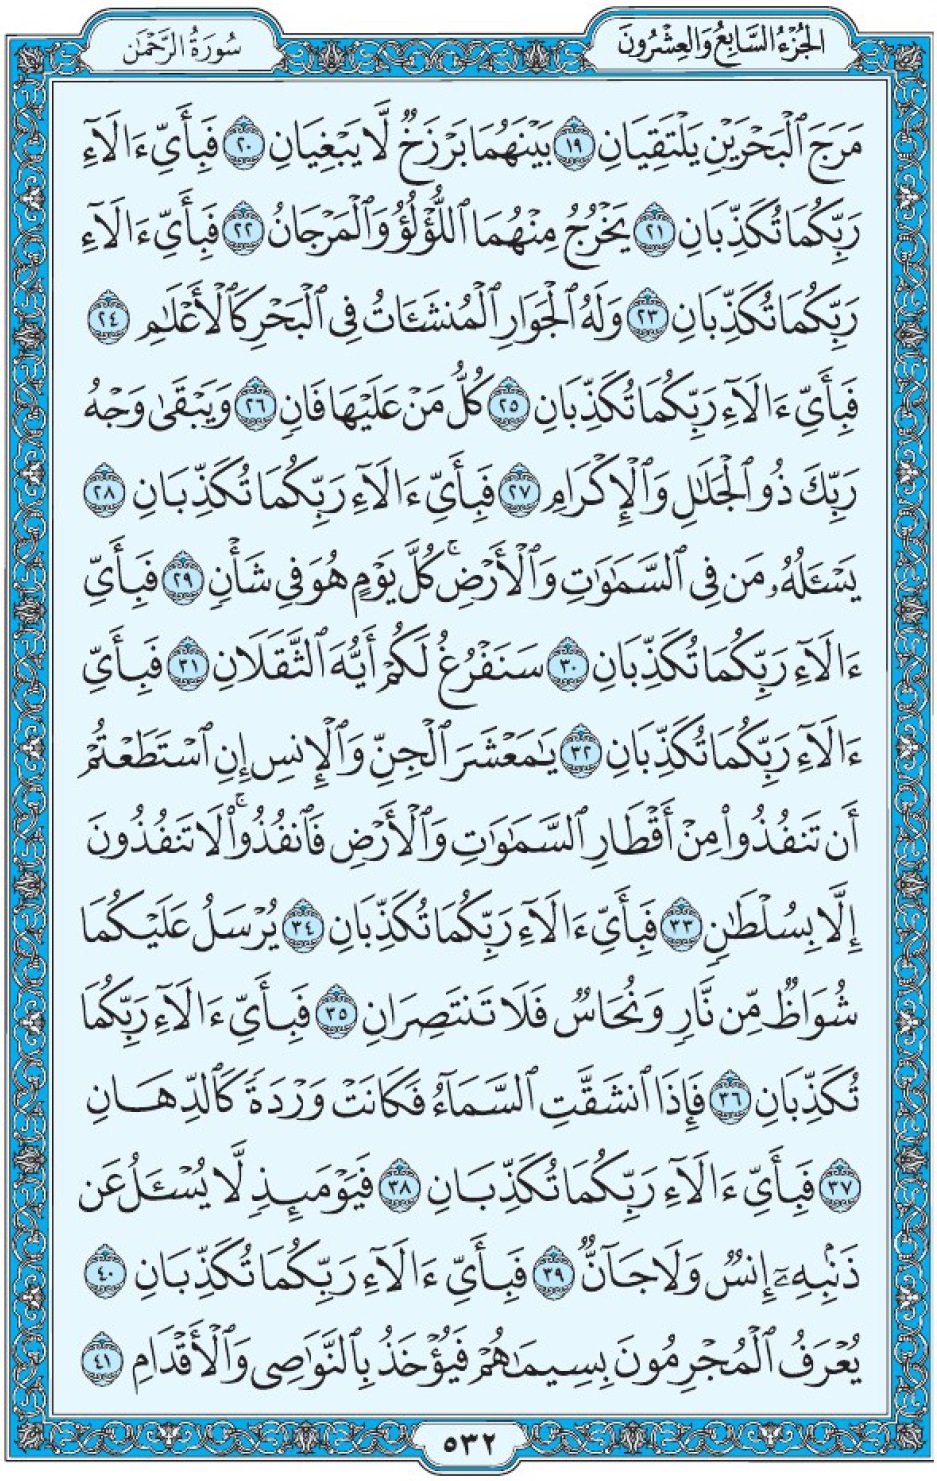 Коран Мединский мусхаф страница 532, сура ар-Рахман, аят 19-41